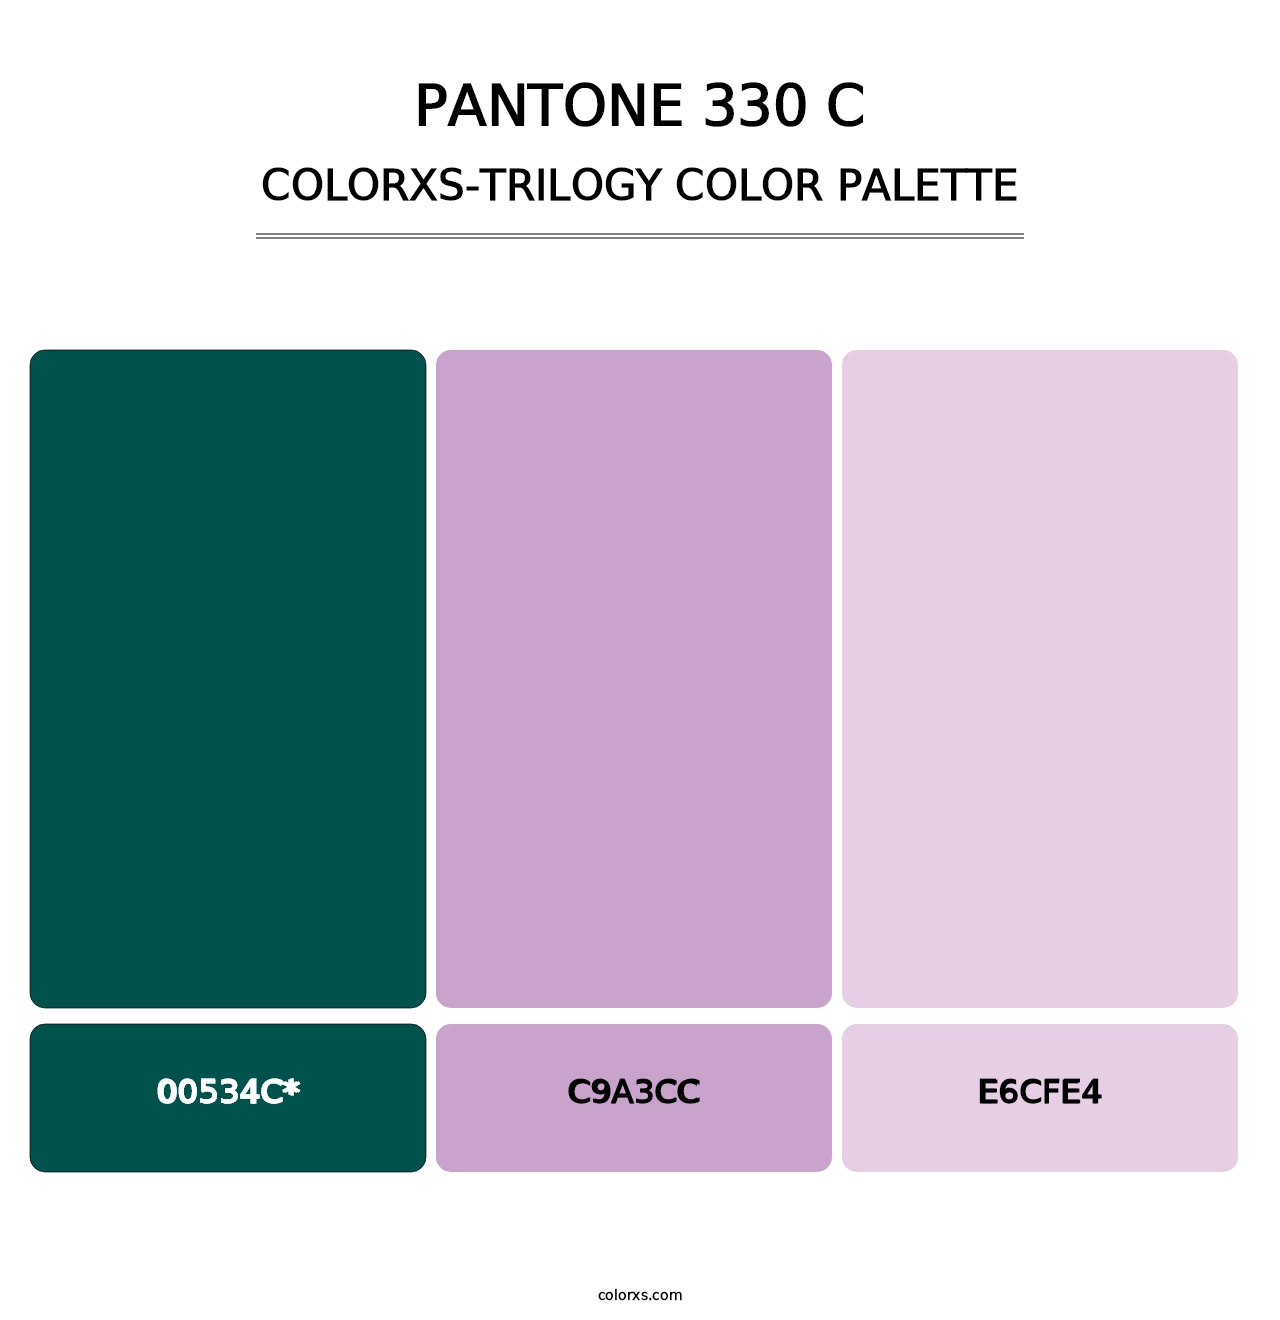 PANTONE 330 C - Colorxs Trilogy Palette